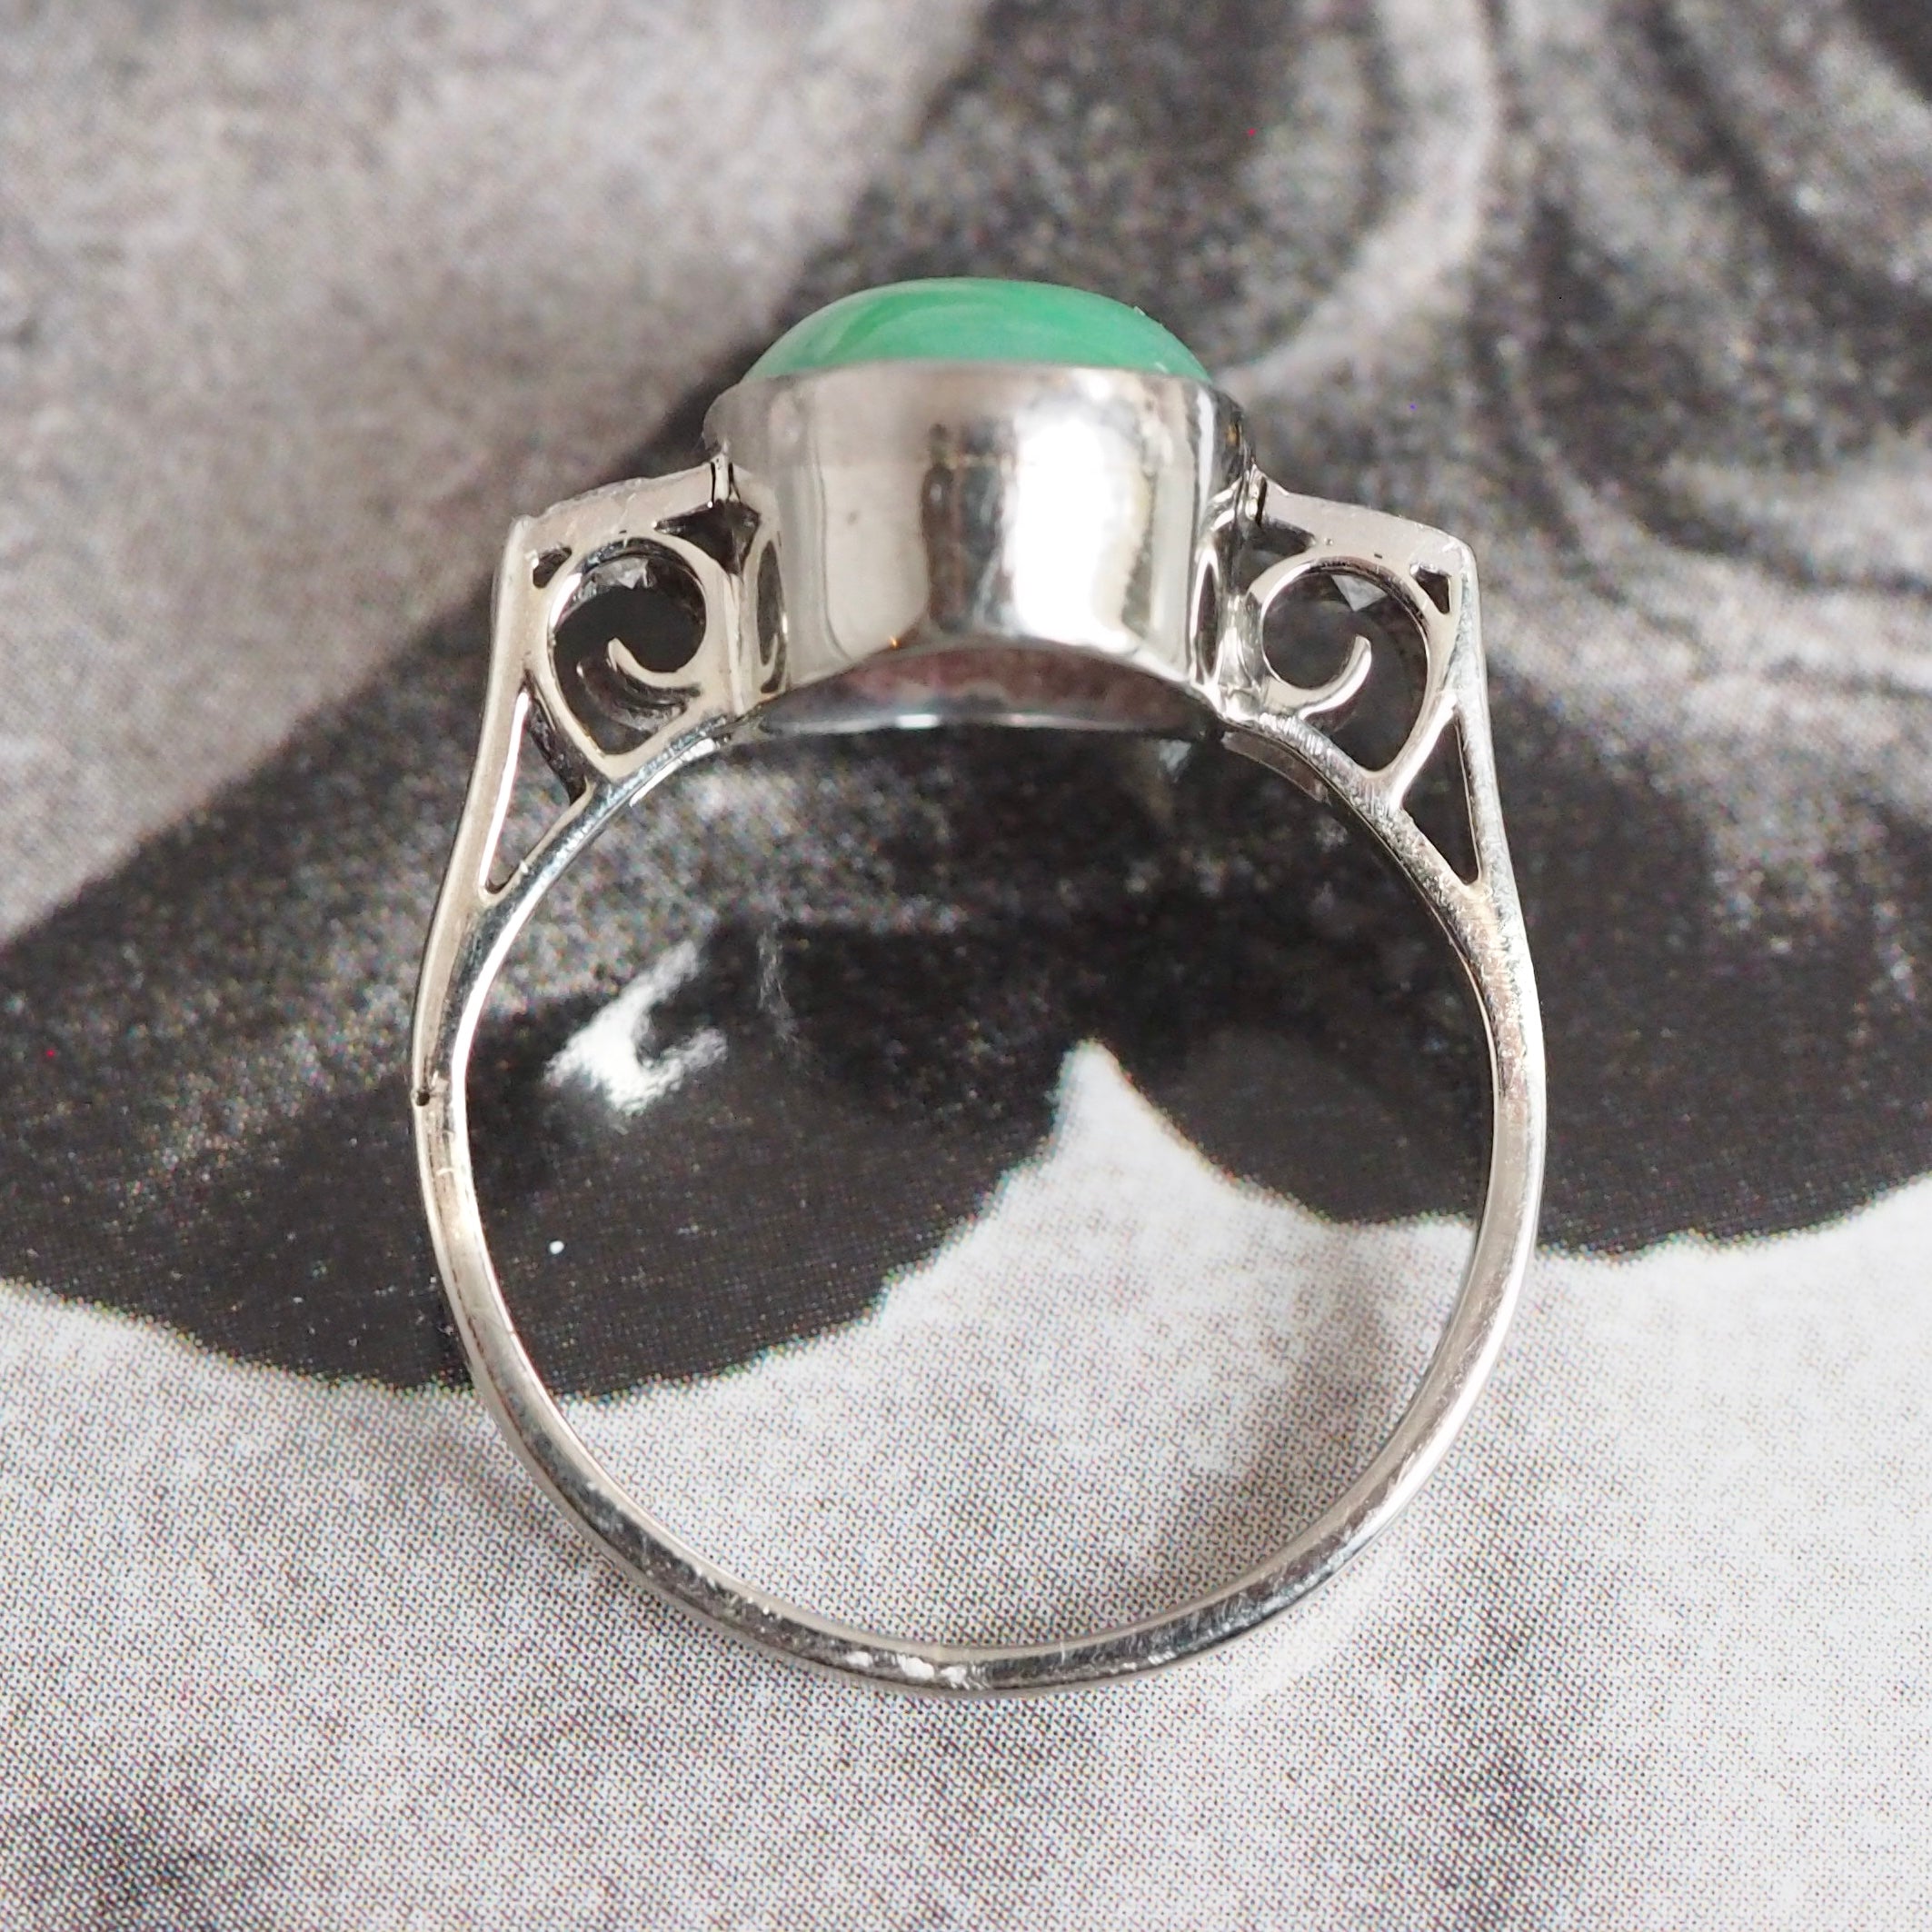 Art Deco 14k White Gold Jade Diamond Ring